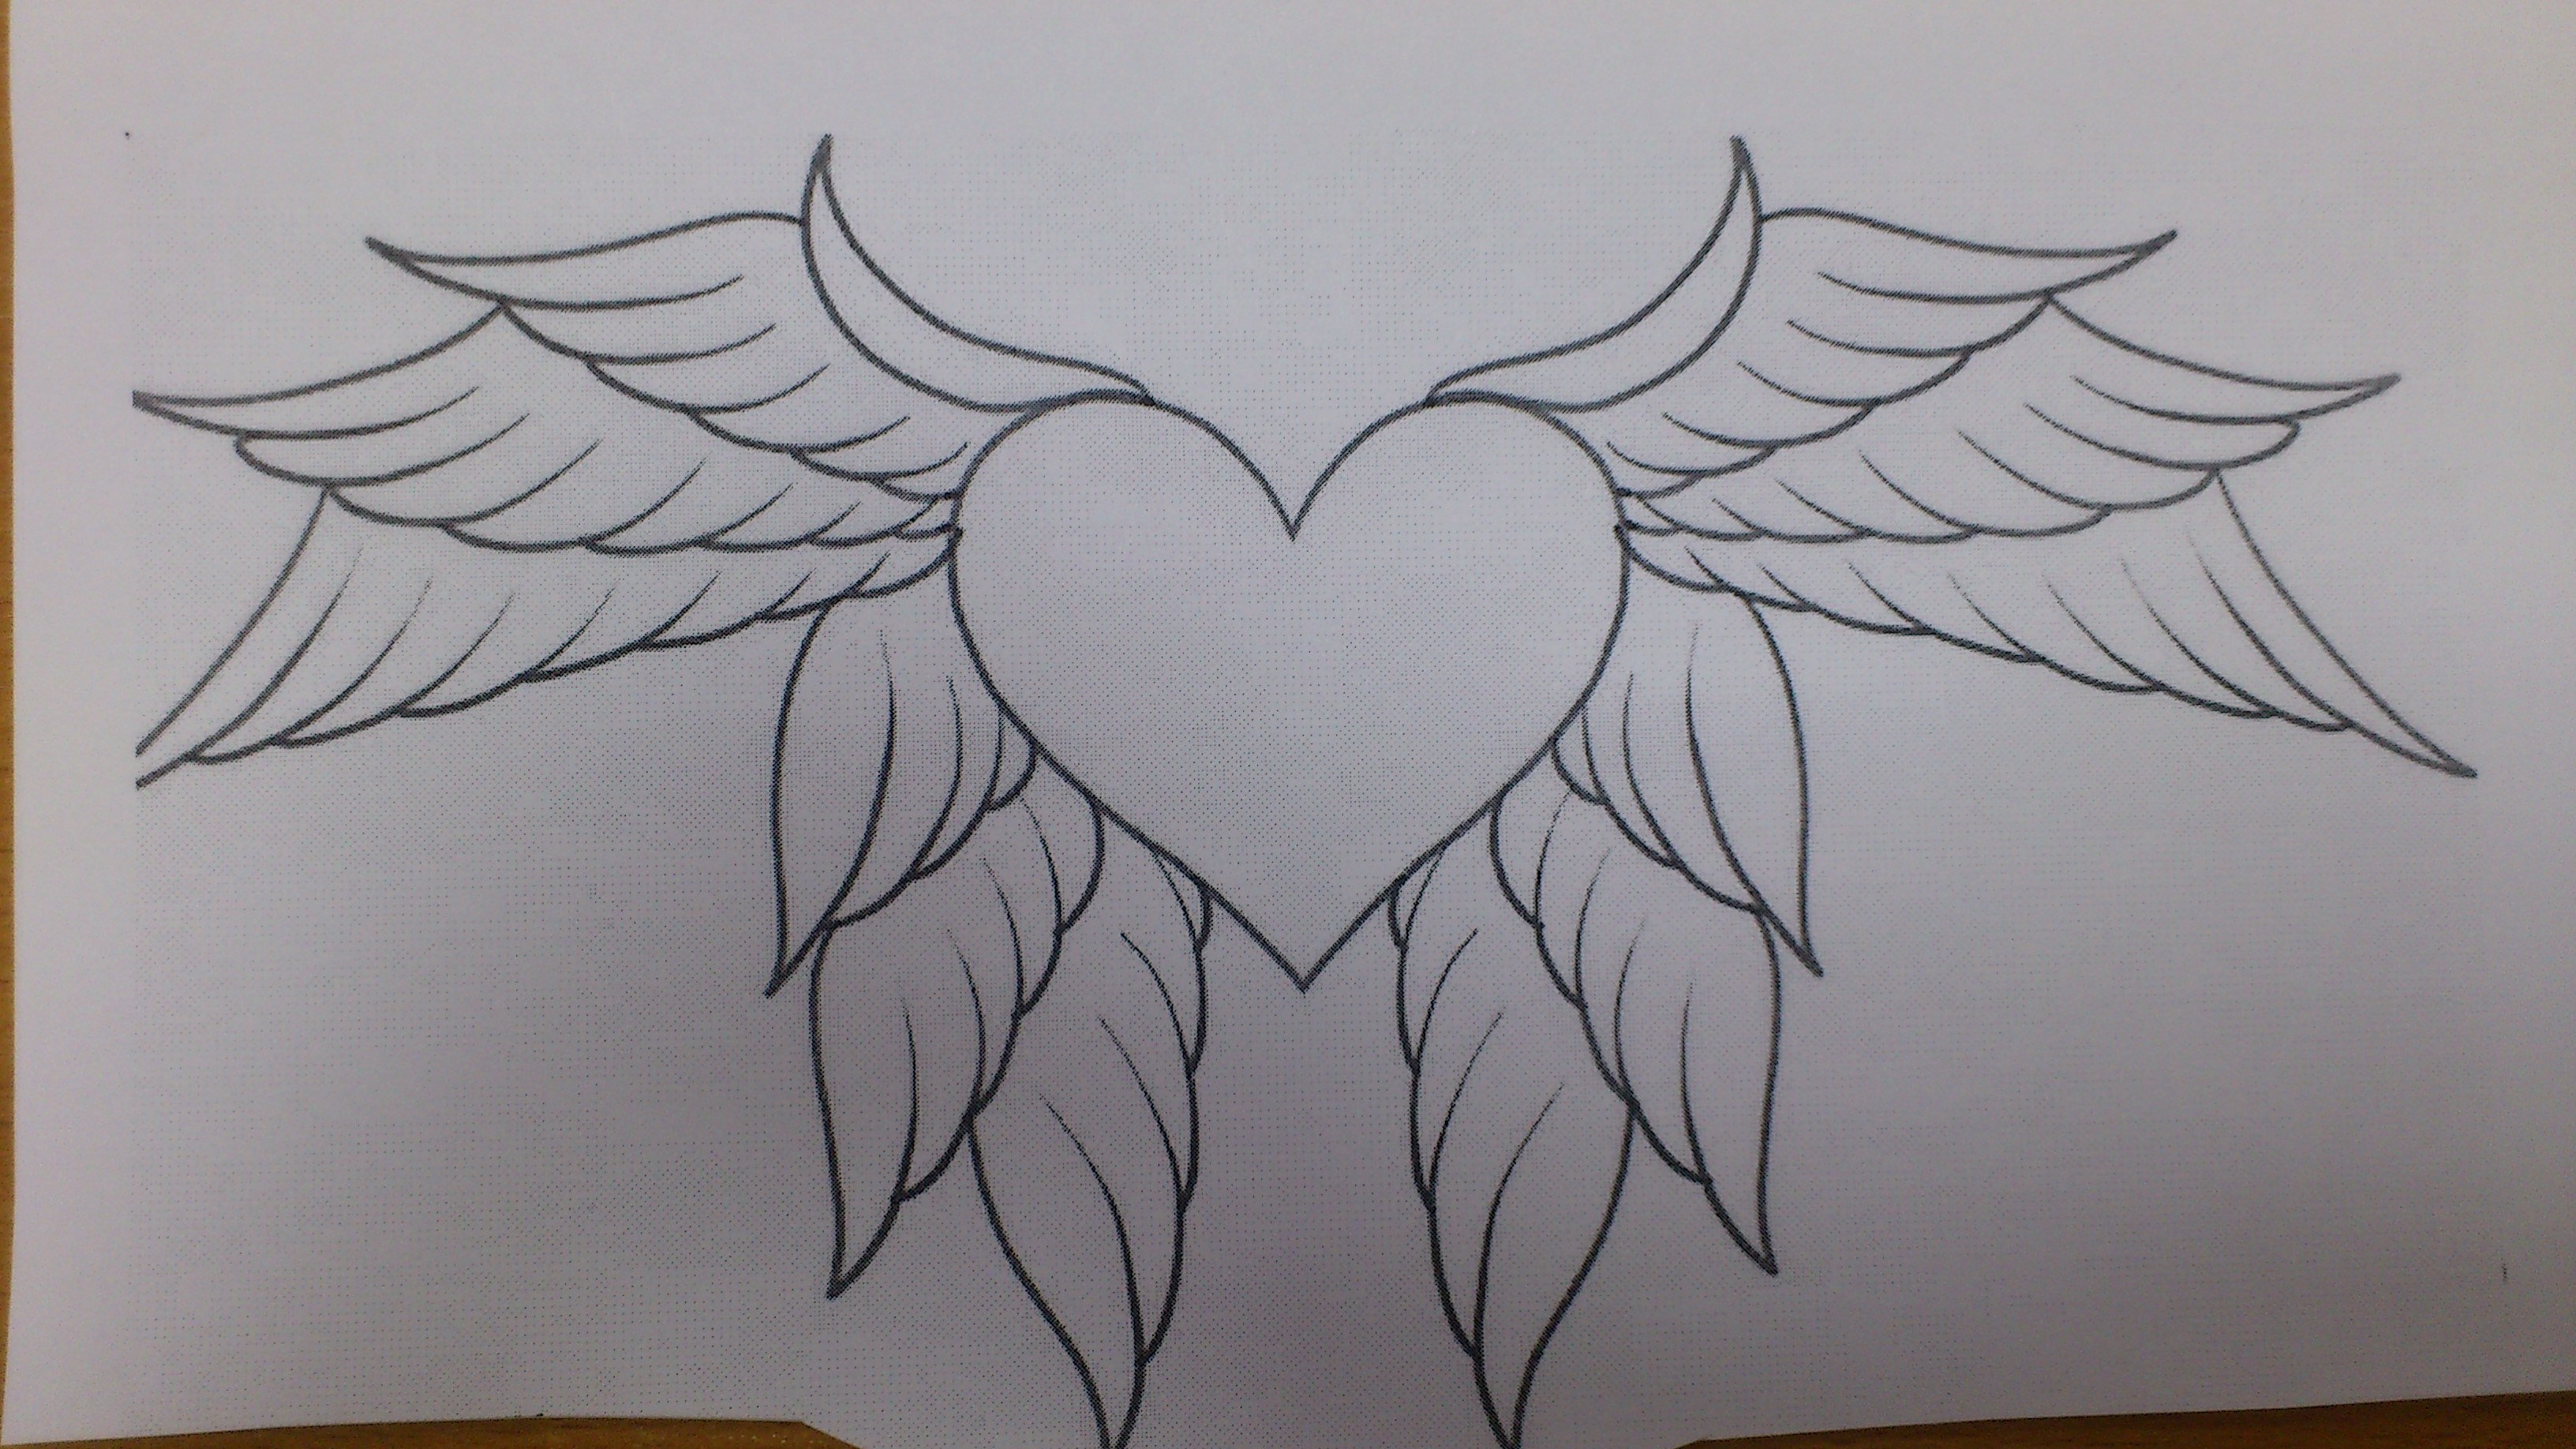 Рисунки карандашом сердце с крыльями